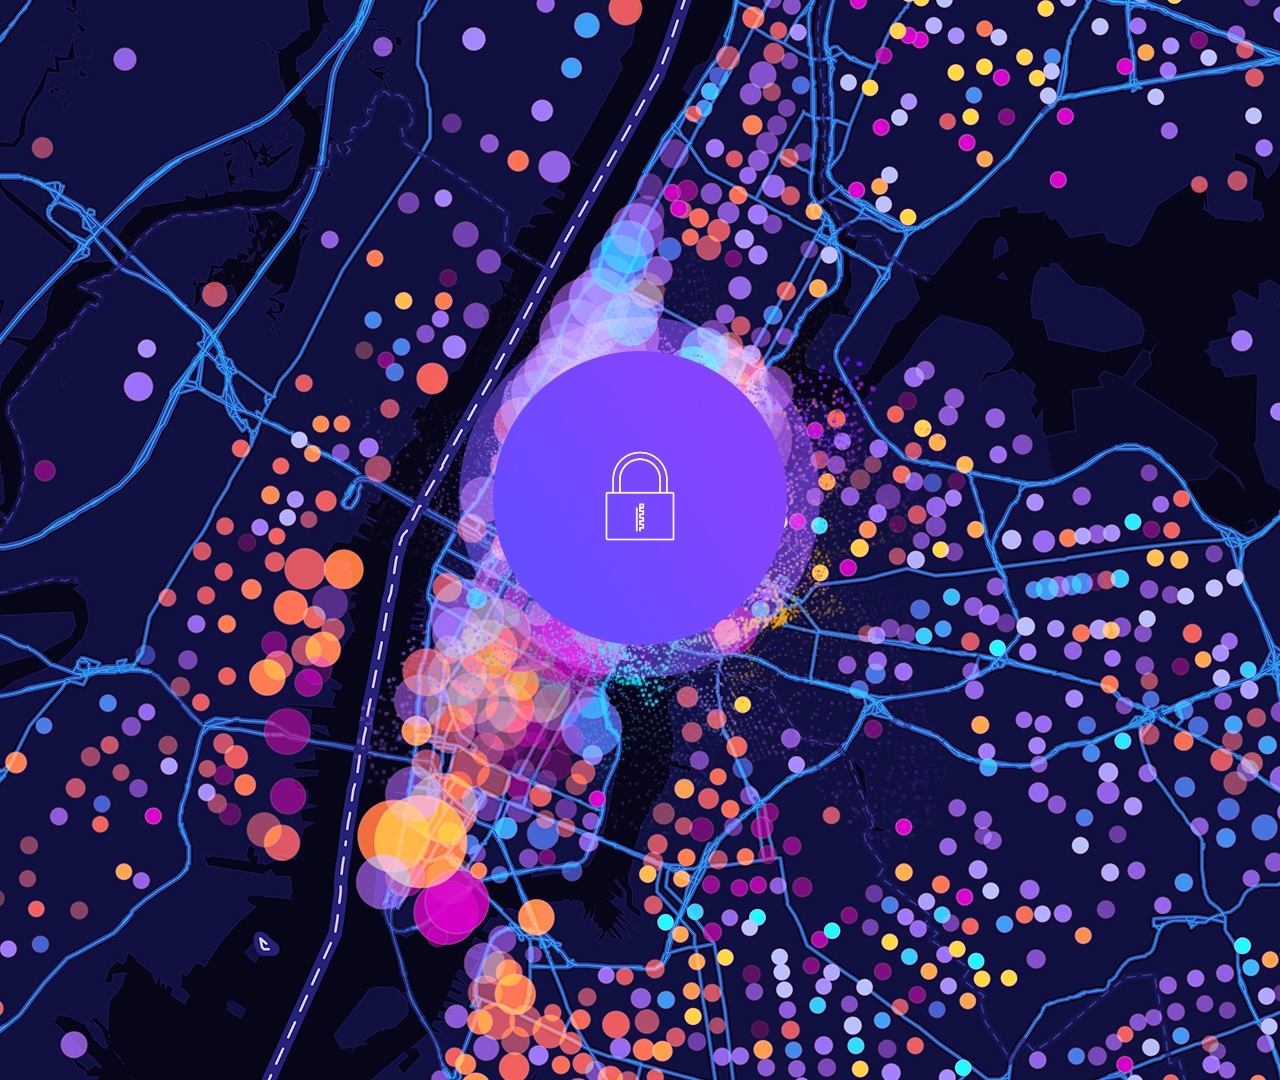 Un icono de un candado y un mapa callejero digital con puntos de datos circulares de color morado, amarillo y rosa